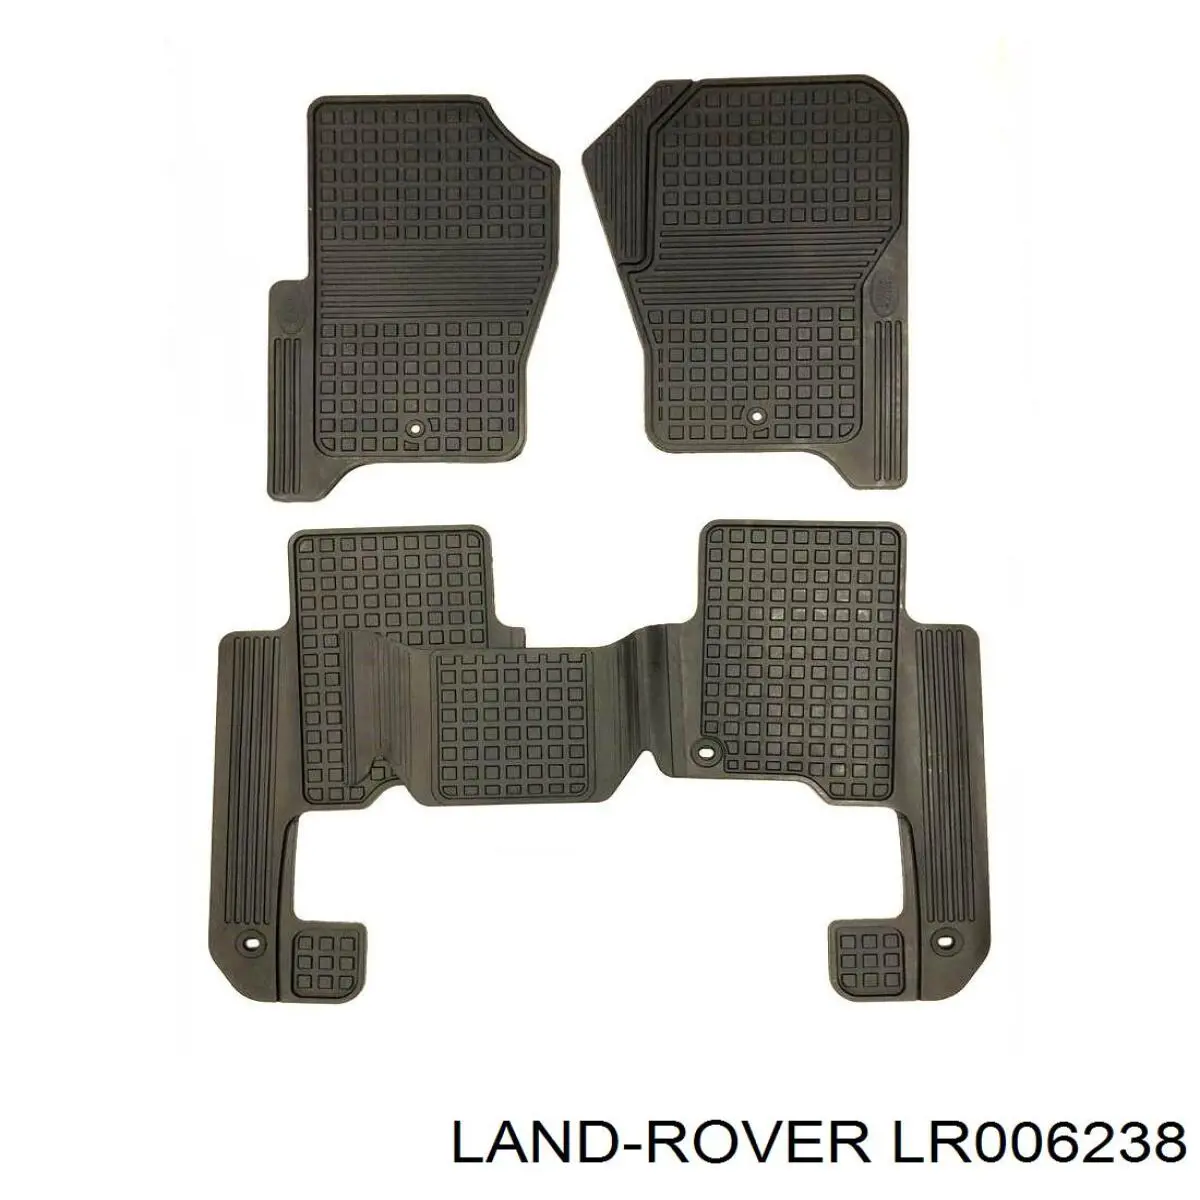 LR006238 Land Rover килимок передні + задні, комплект на авто